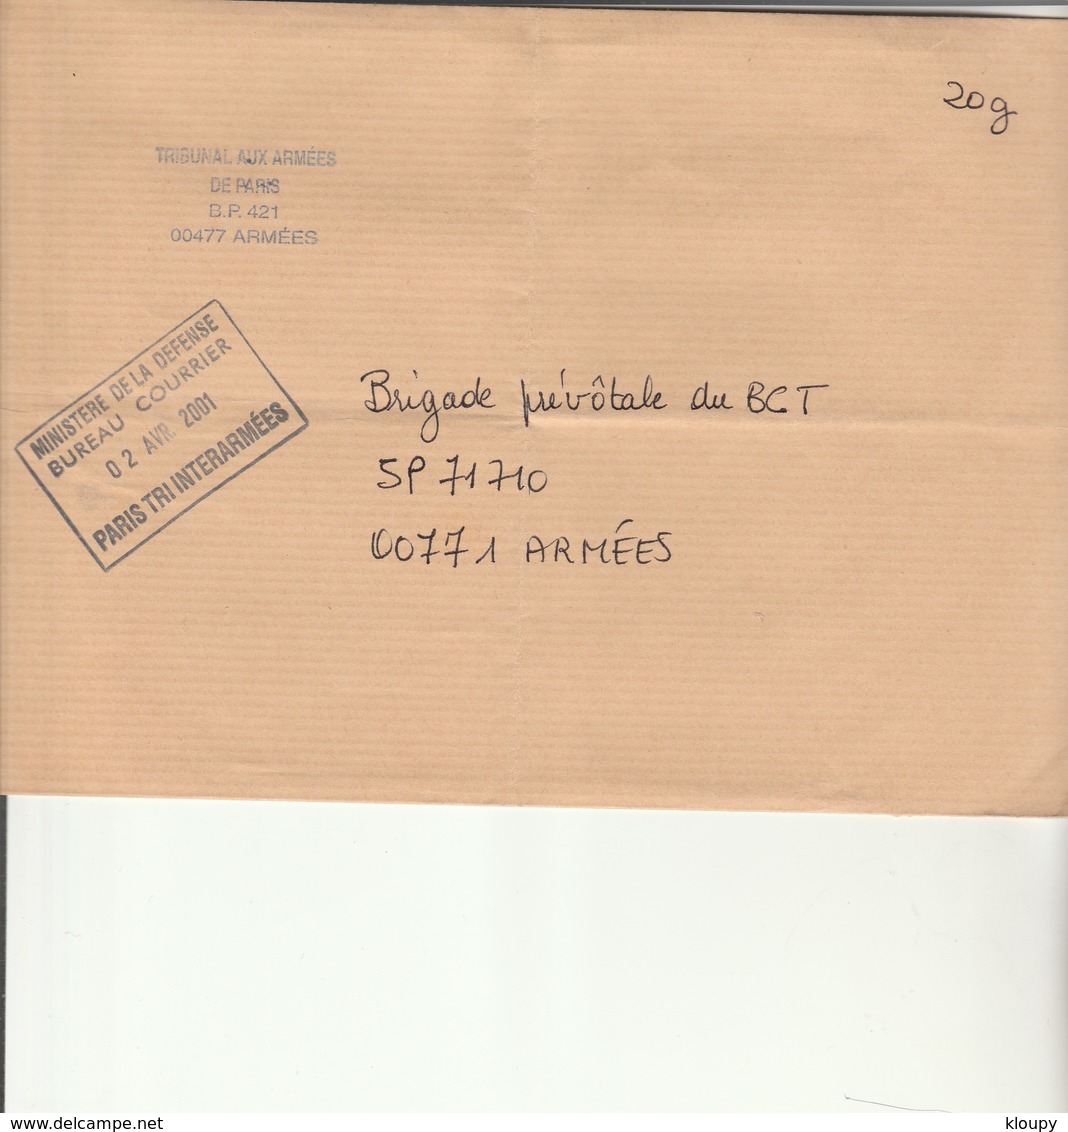 L 1 -  - Enveloppe Pour Gendarmerie Prévôtale SP 71710 Avec Cachet PARIS TRI INTERARMEES - Militaire Stempels Vanaf 1900 (buiten De Oorlog)